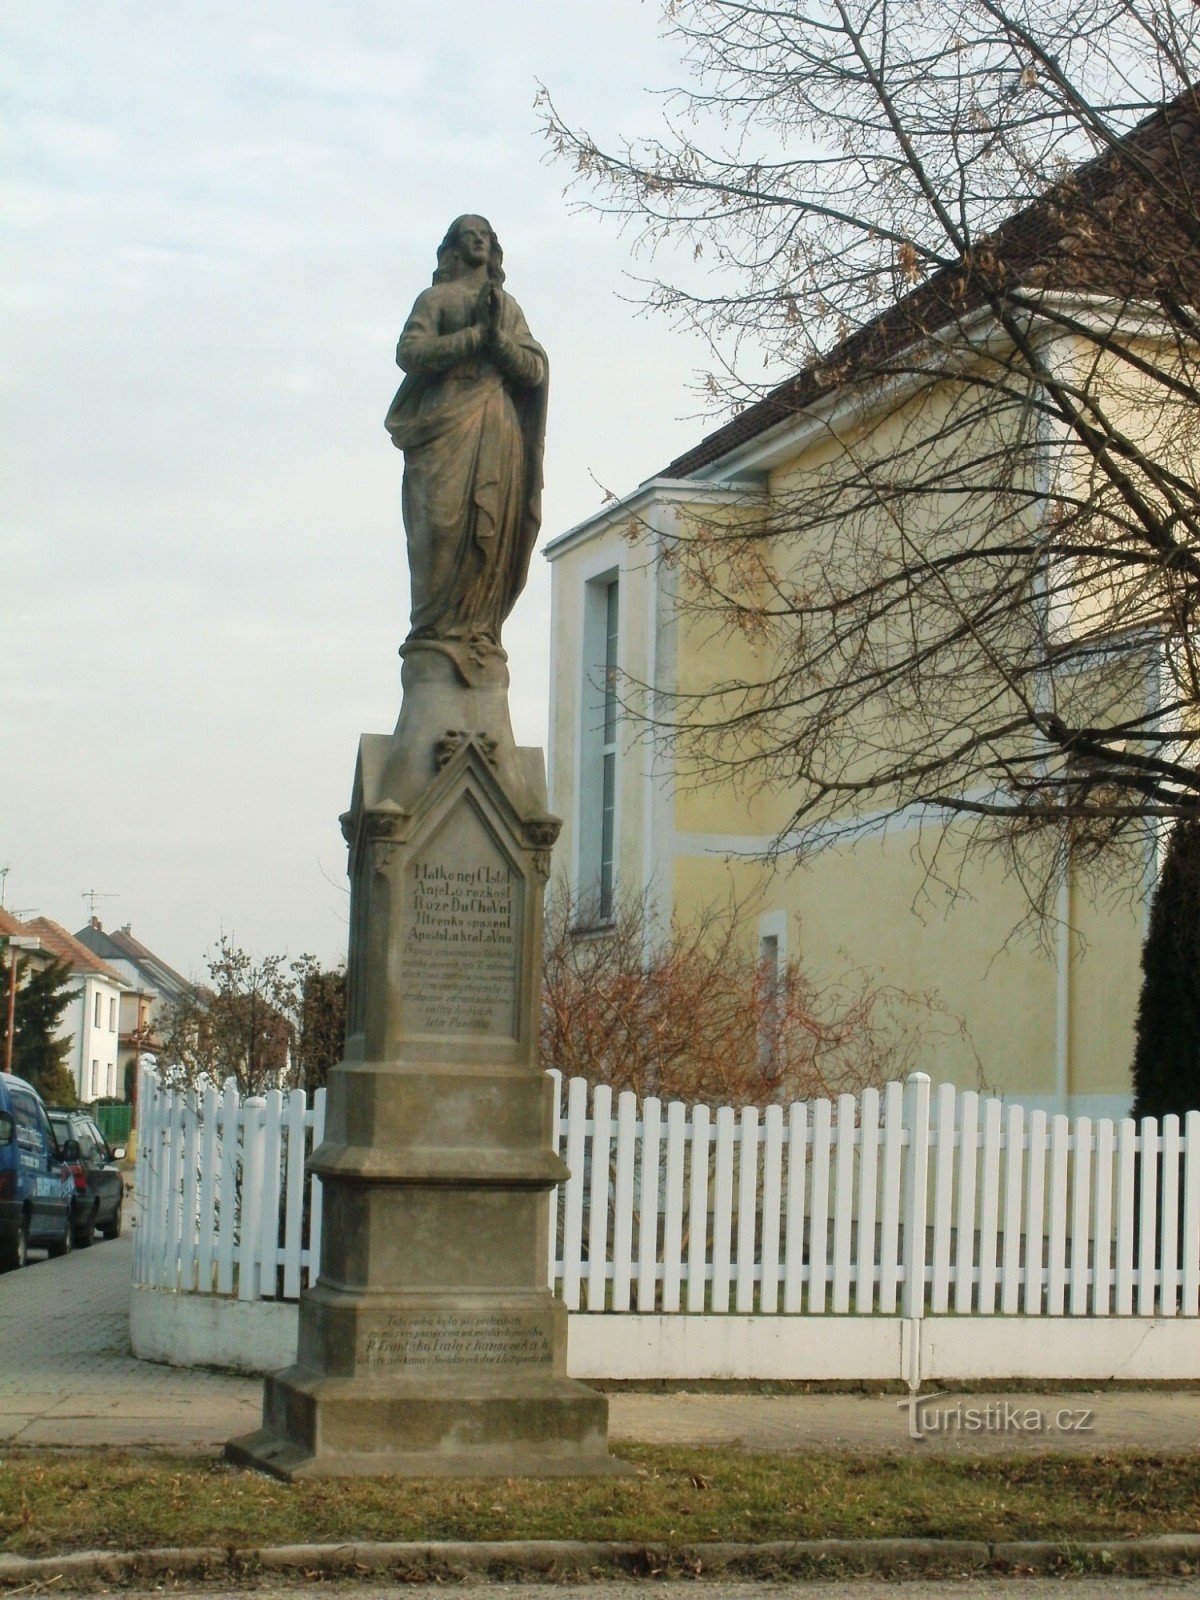 Nový Bydžov - um monumento com uma estátua de St. Virgem Maria